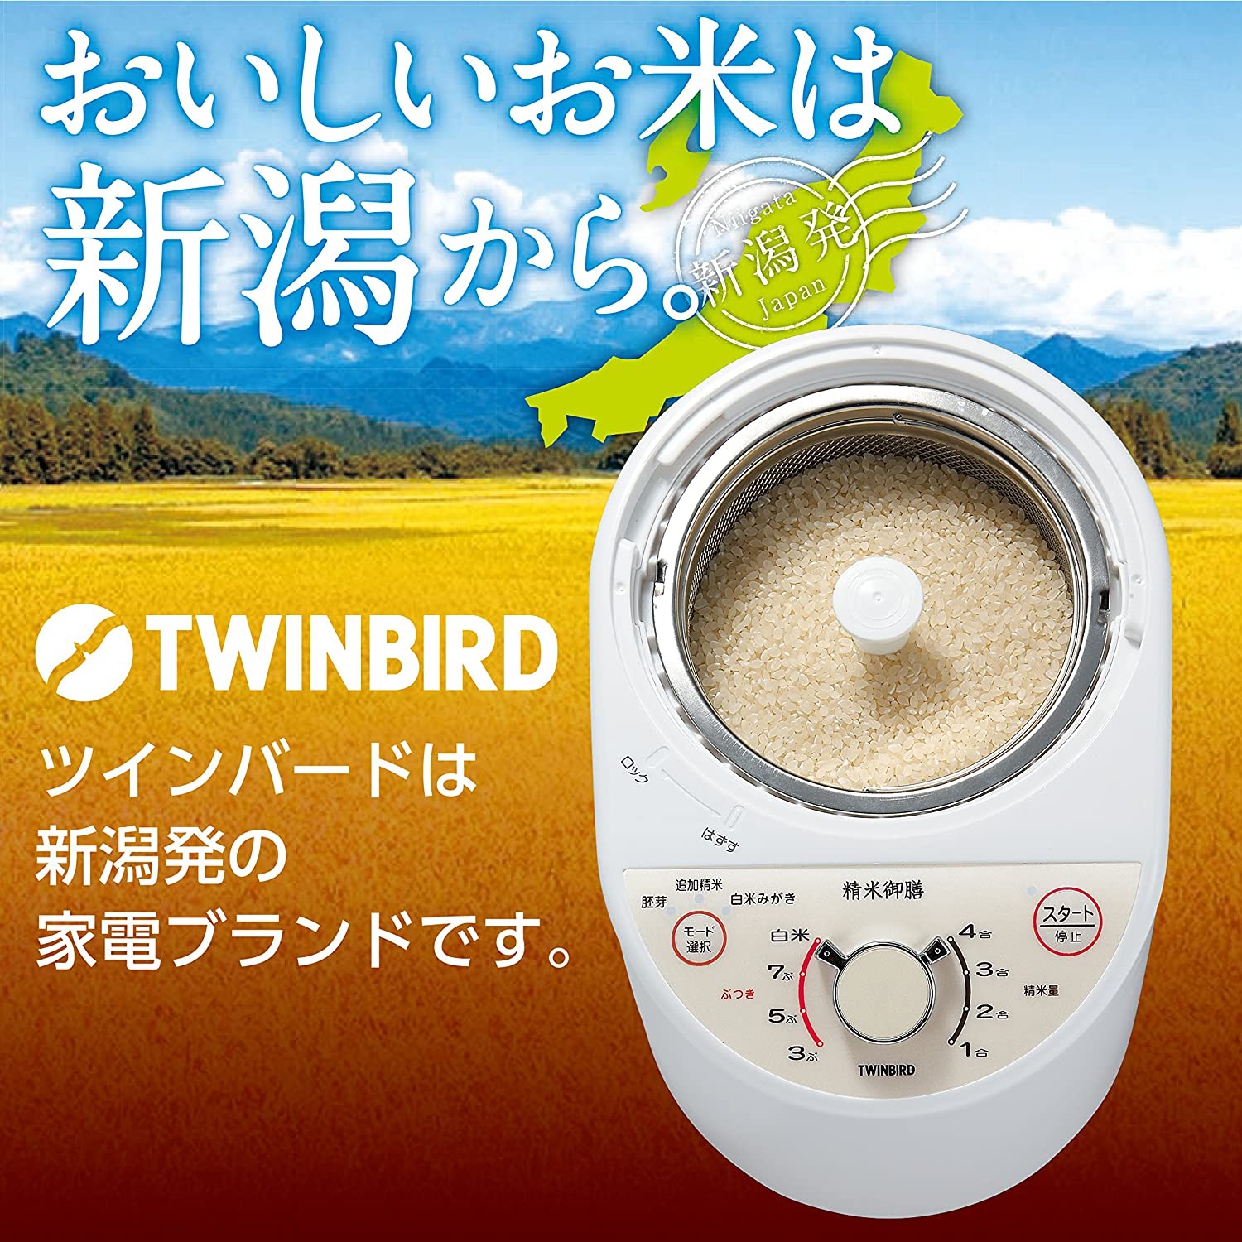 TWINBIRD(ツインバード) コンパクト精米器 精米御膳 MR-E500Wの商品画像サムネ8 